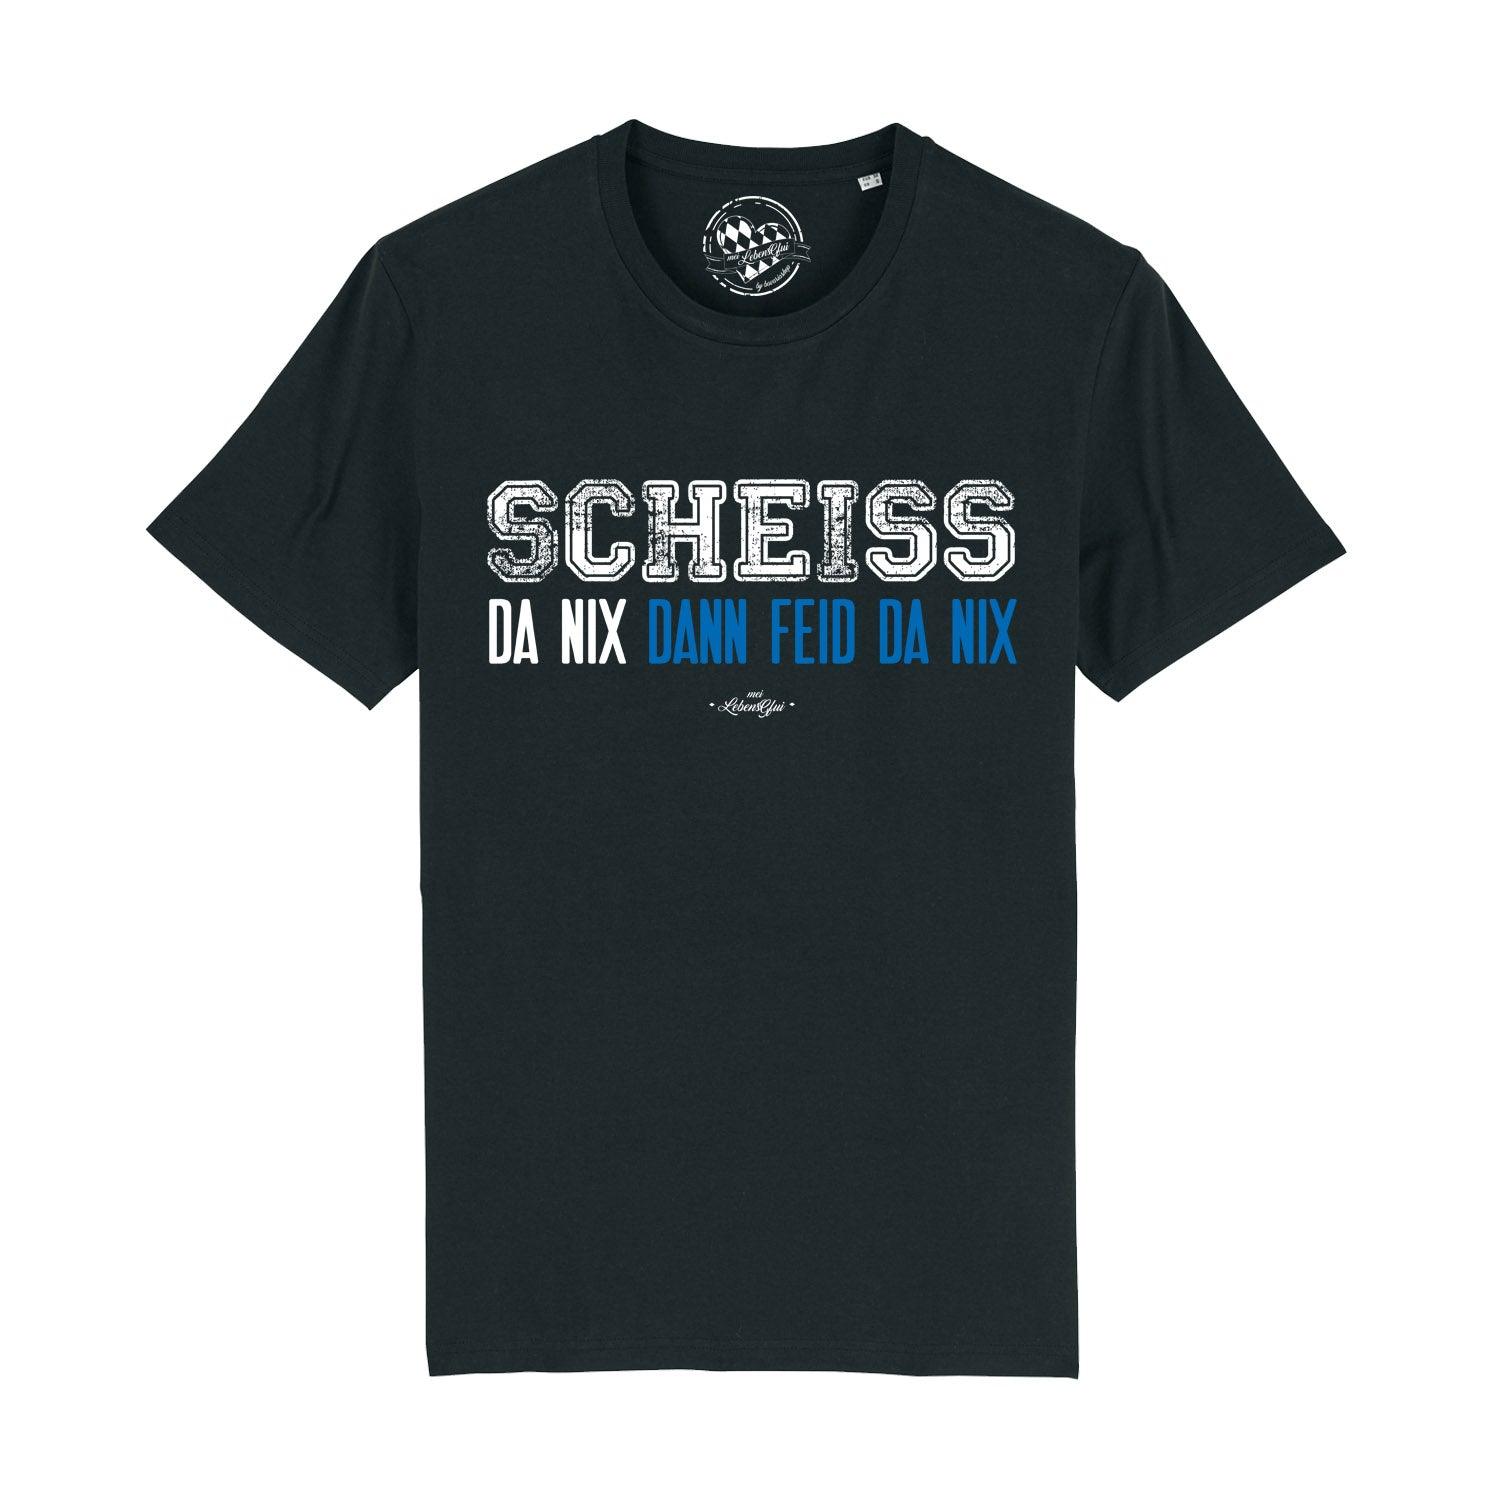 Herren T-Shirt "Scheiß da nix" - bavariashop - mei LebensGfui